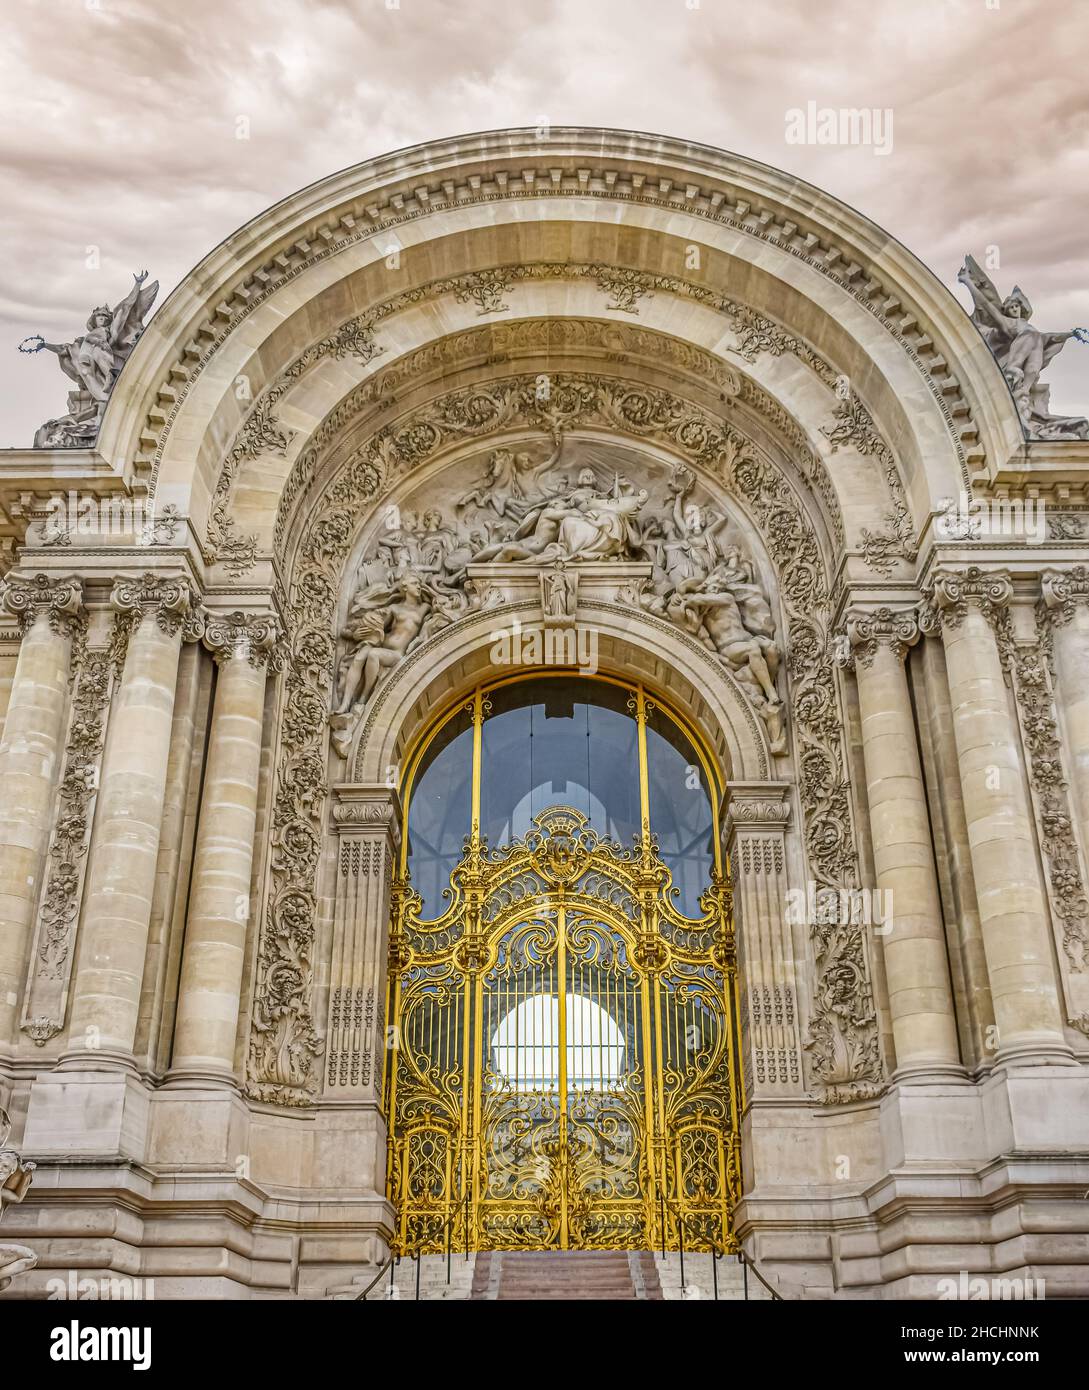 Pórtico monumentale con colonne Jónicas del palacio de bellas artes en Paris, Francia-Edit.tif Foto Stock